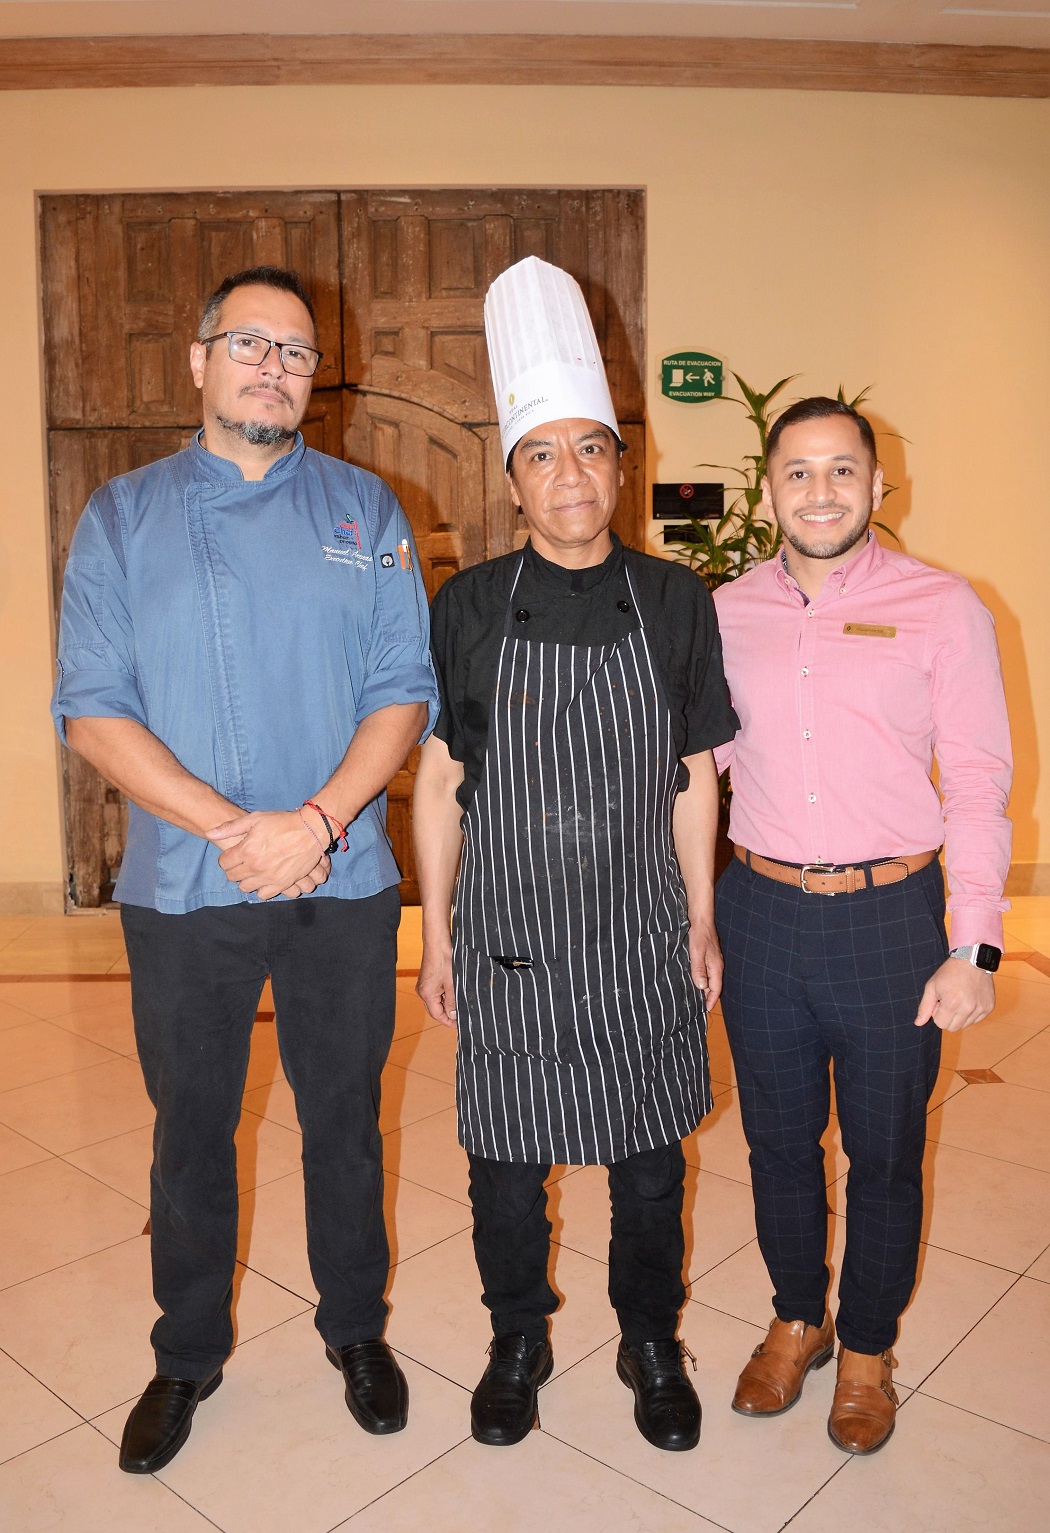 Inauguran Festival gastronómico mexicano en Hotel Intercontinental San Pedro Sula